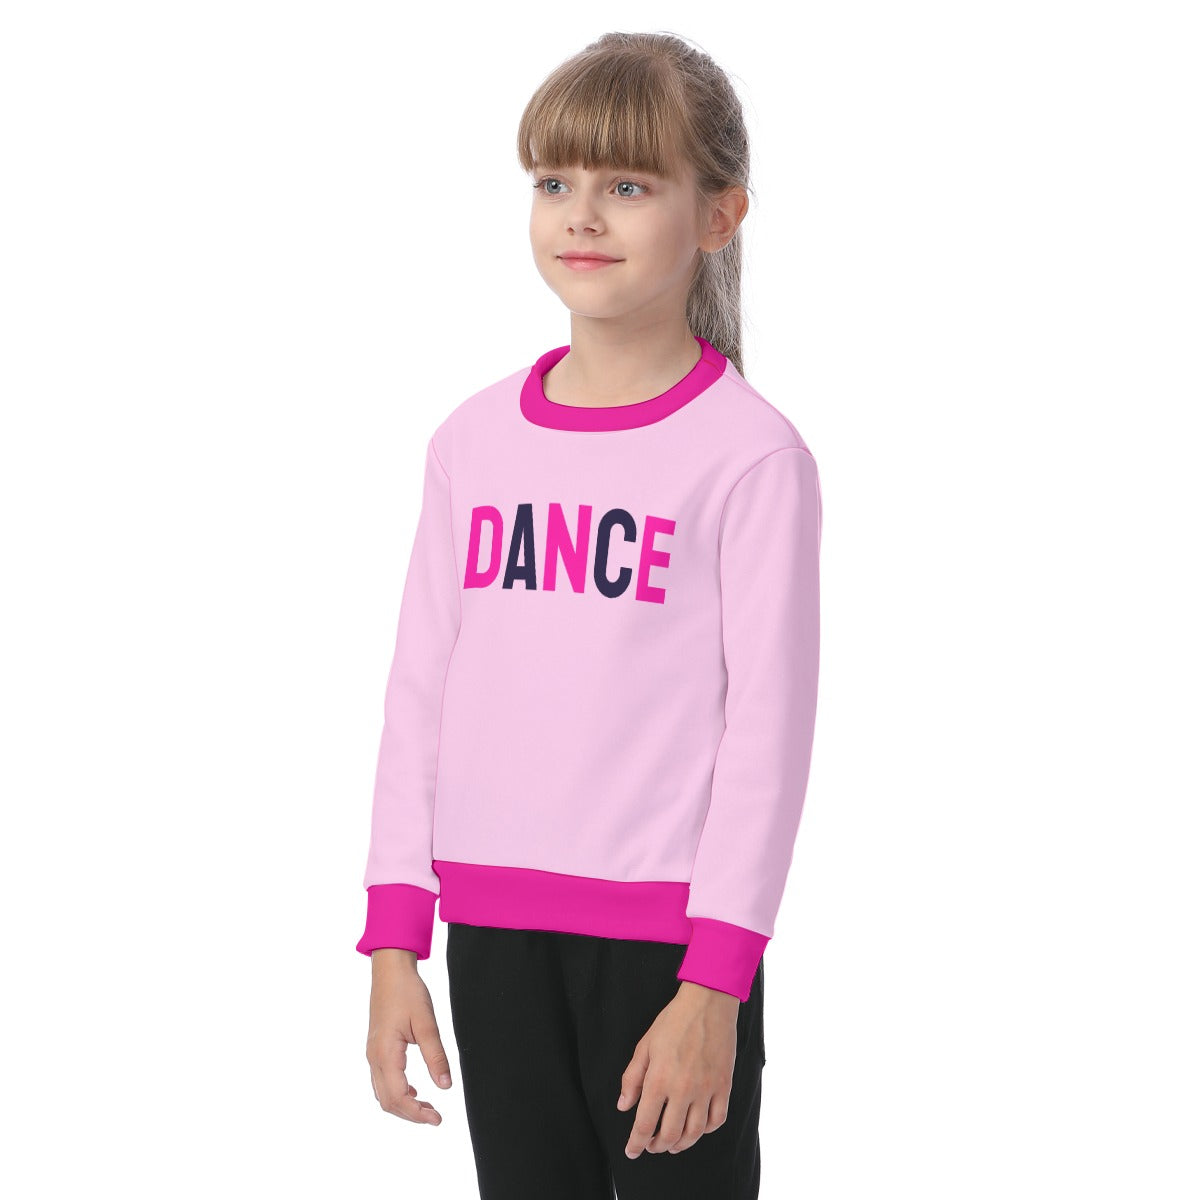 Pink Dance Sweatshirt - Kids - Studio Dansu